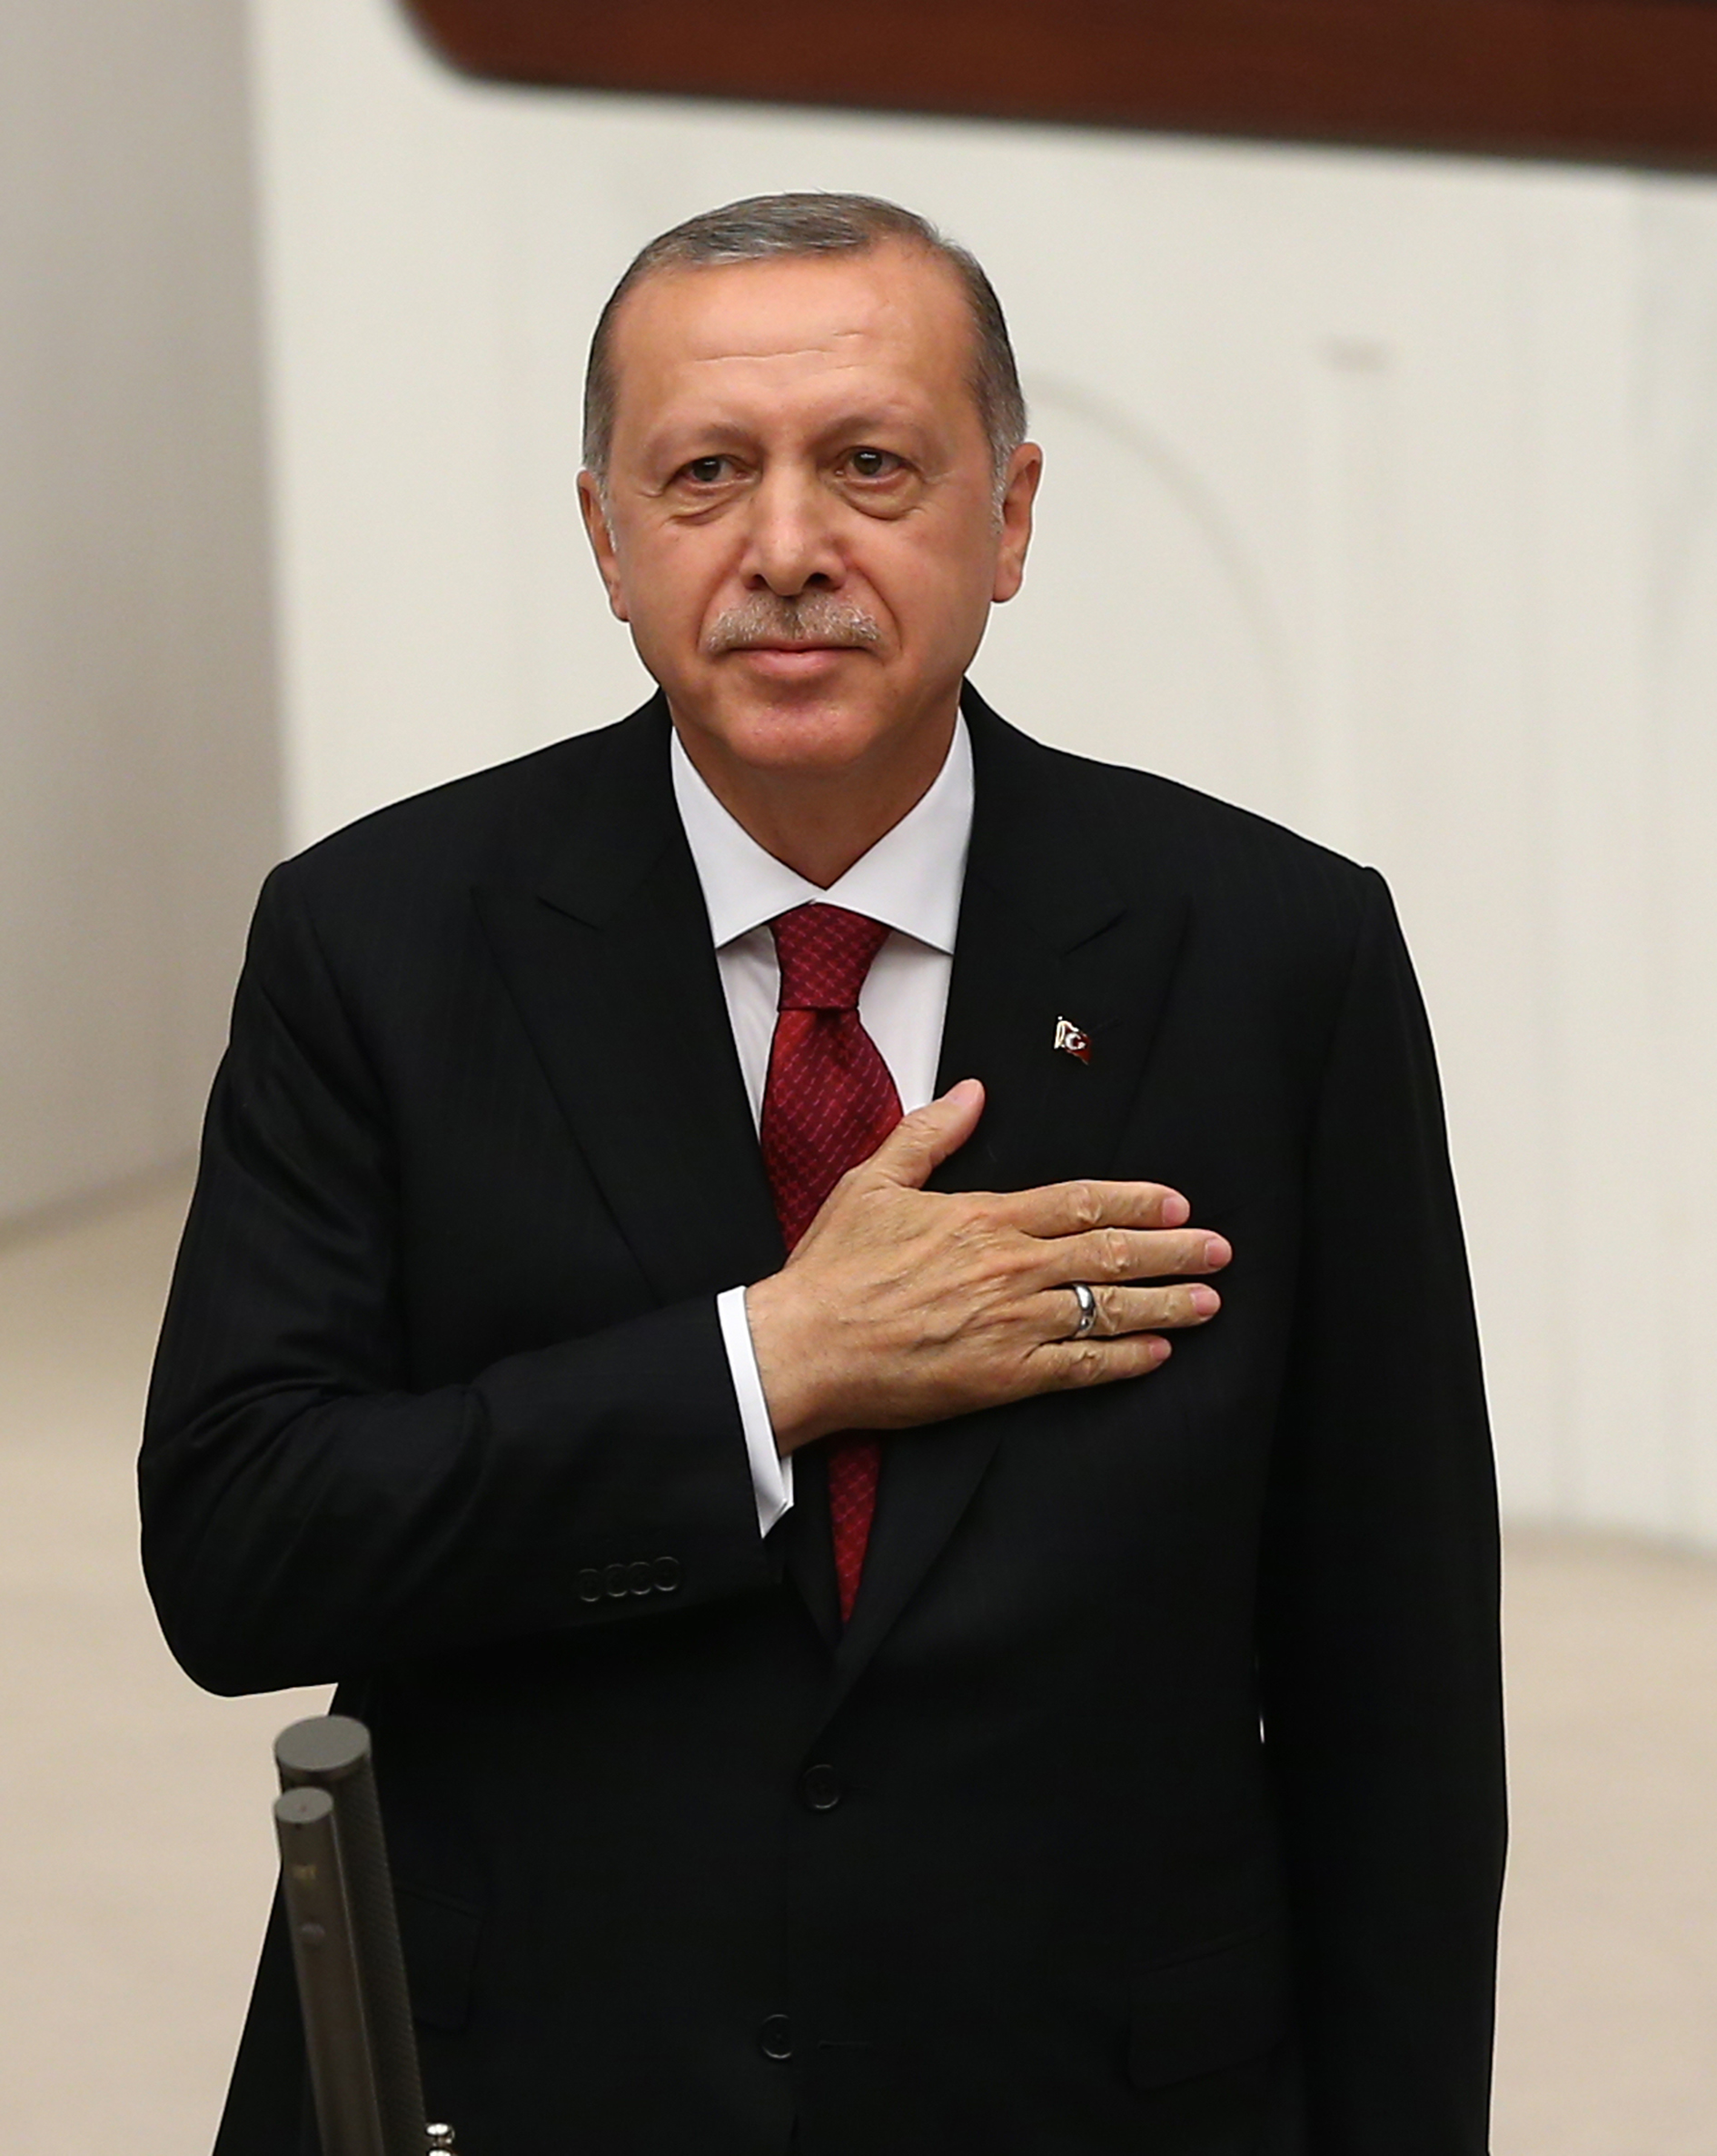 أردوغان يؤدي اليمين الدستورية تحت قبة البرلمان التركي كأول رئيس للنظام الرئاسي الجديد